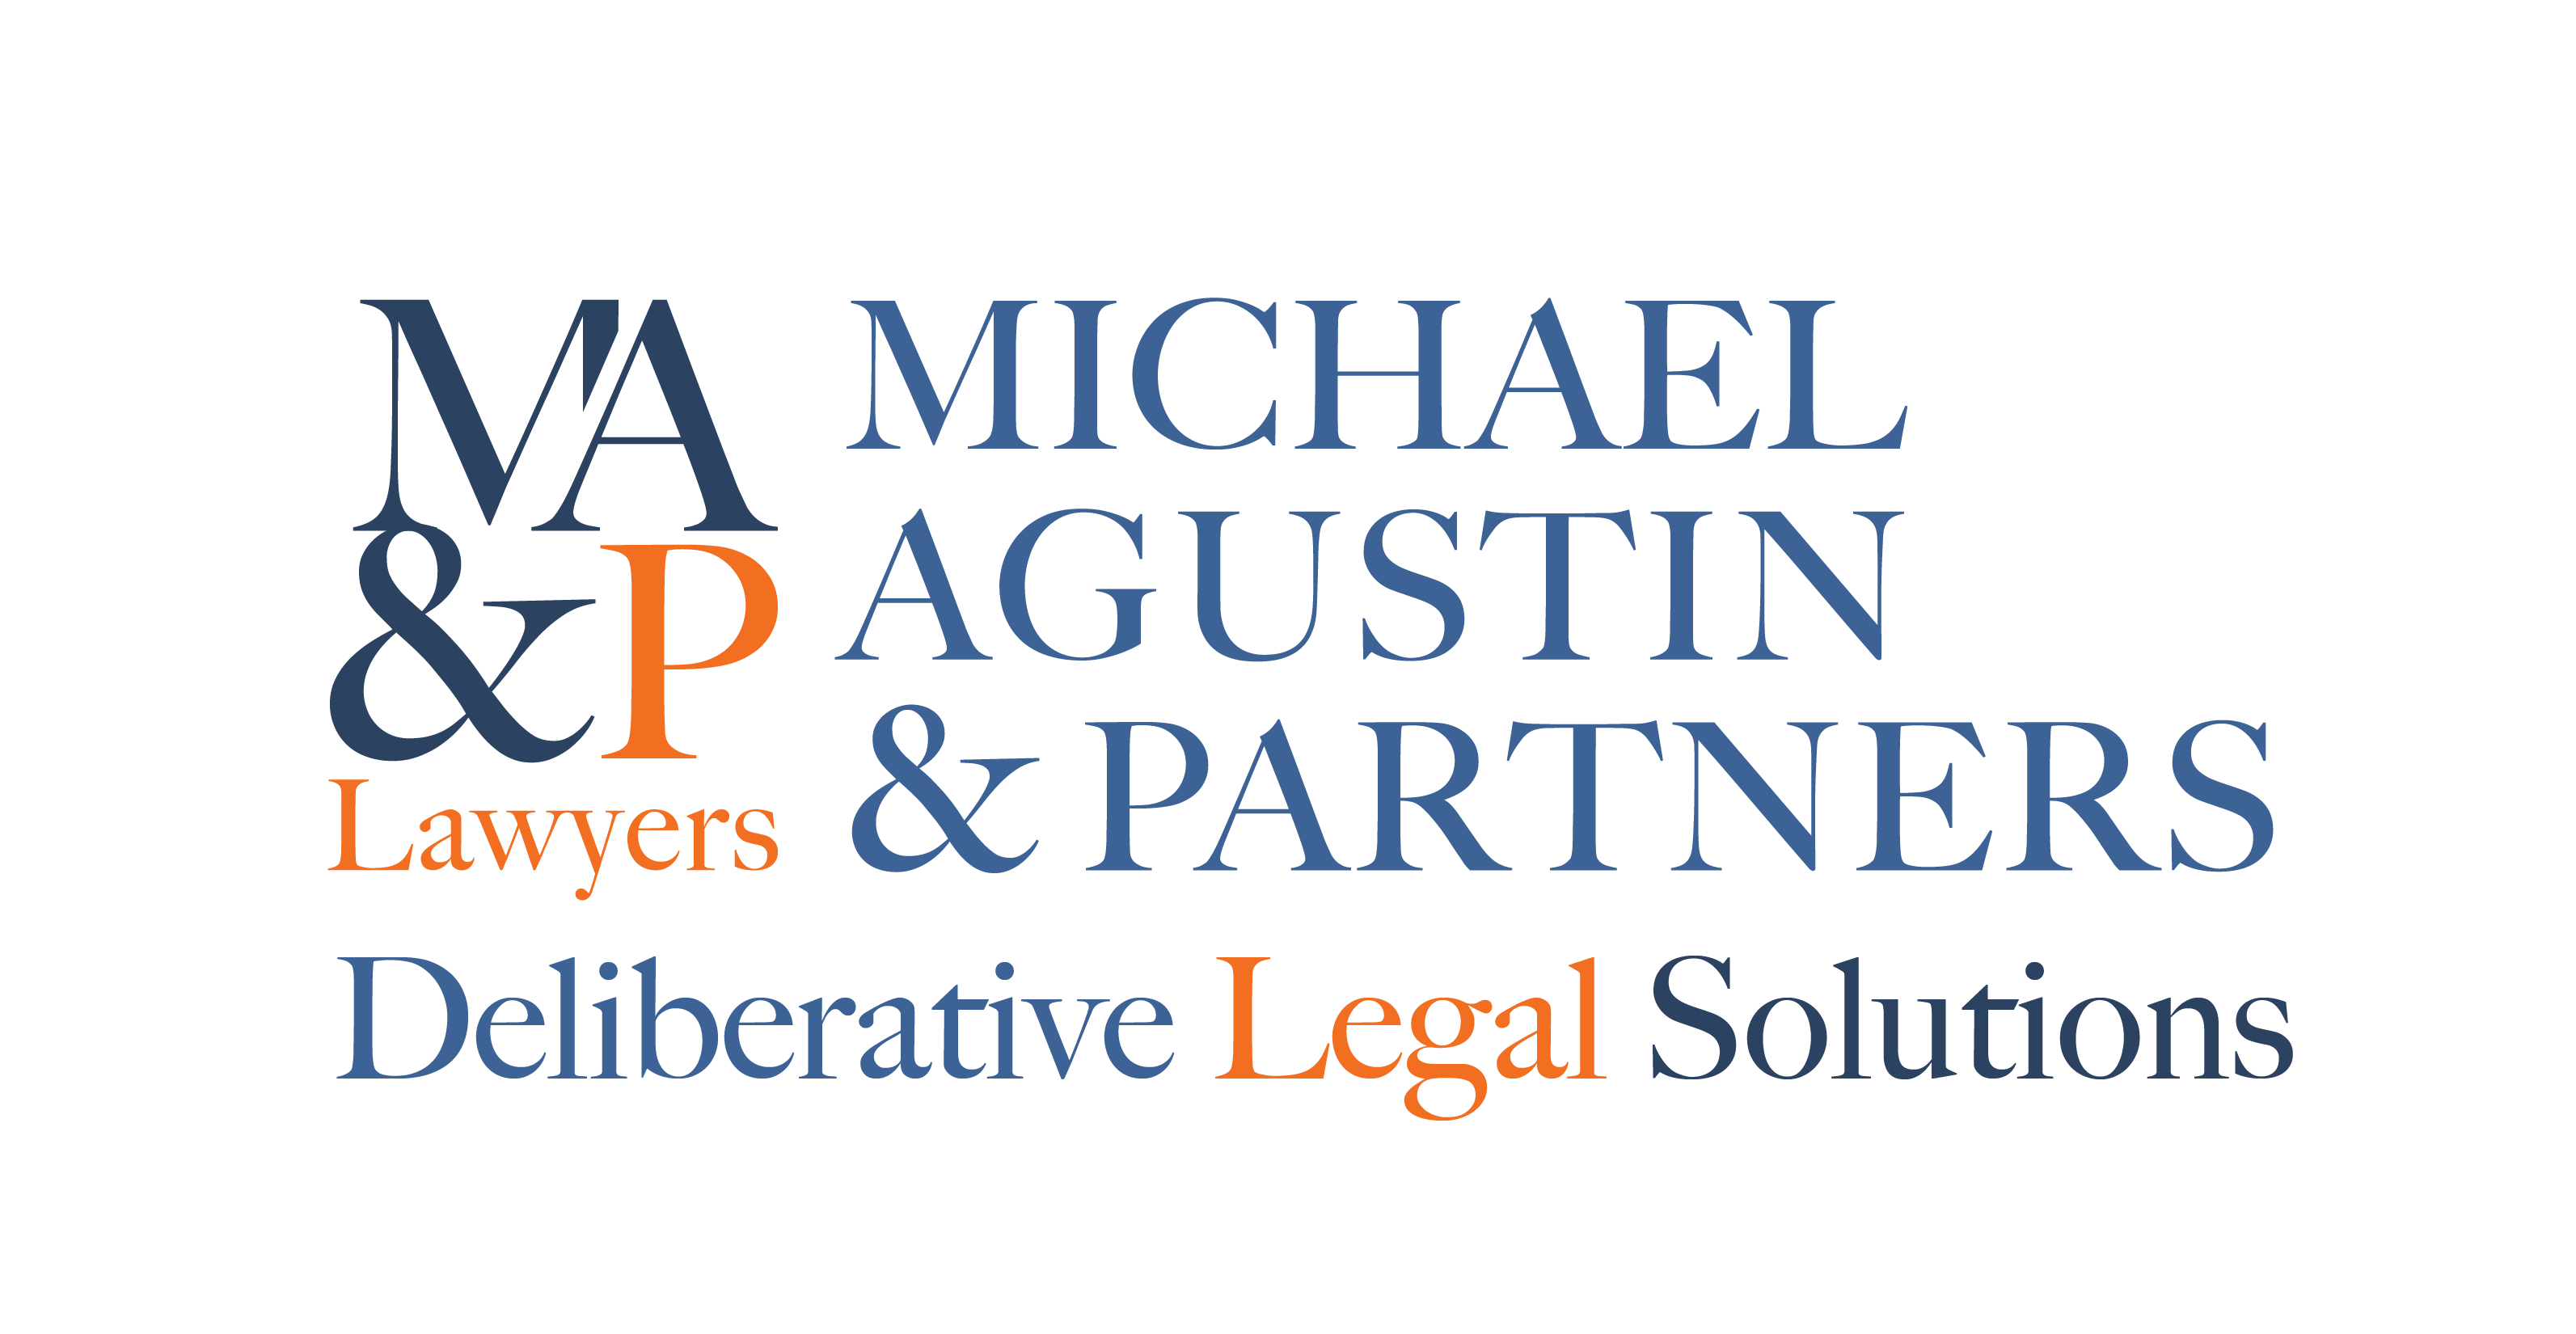 Deliberative Legal Solutions